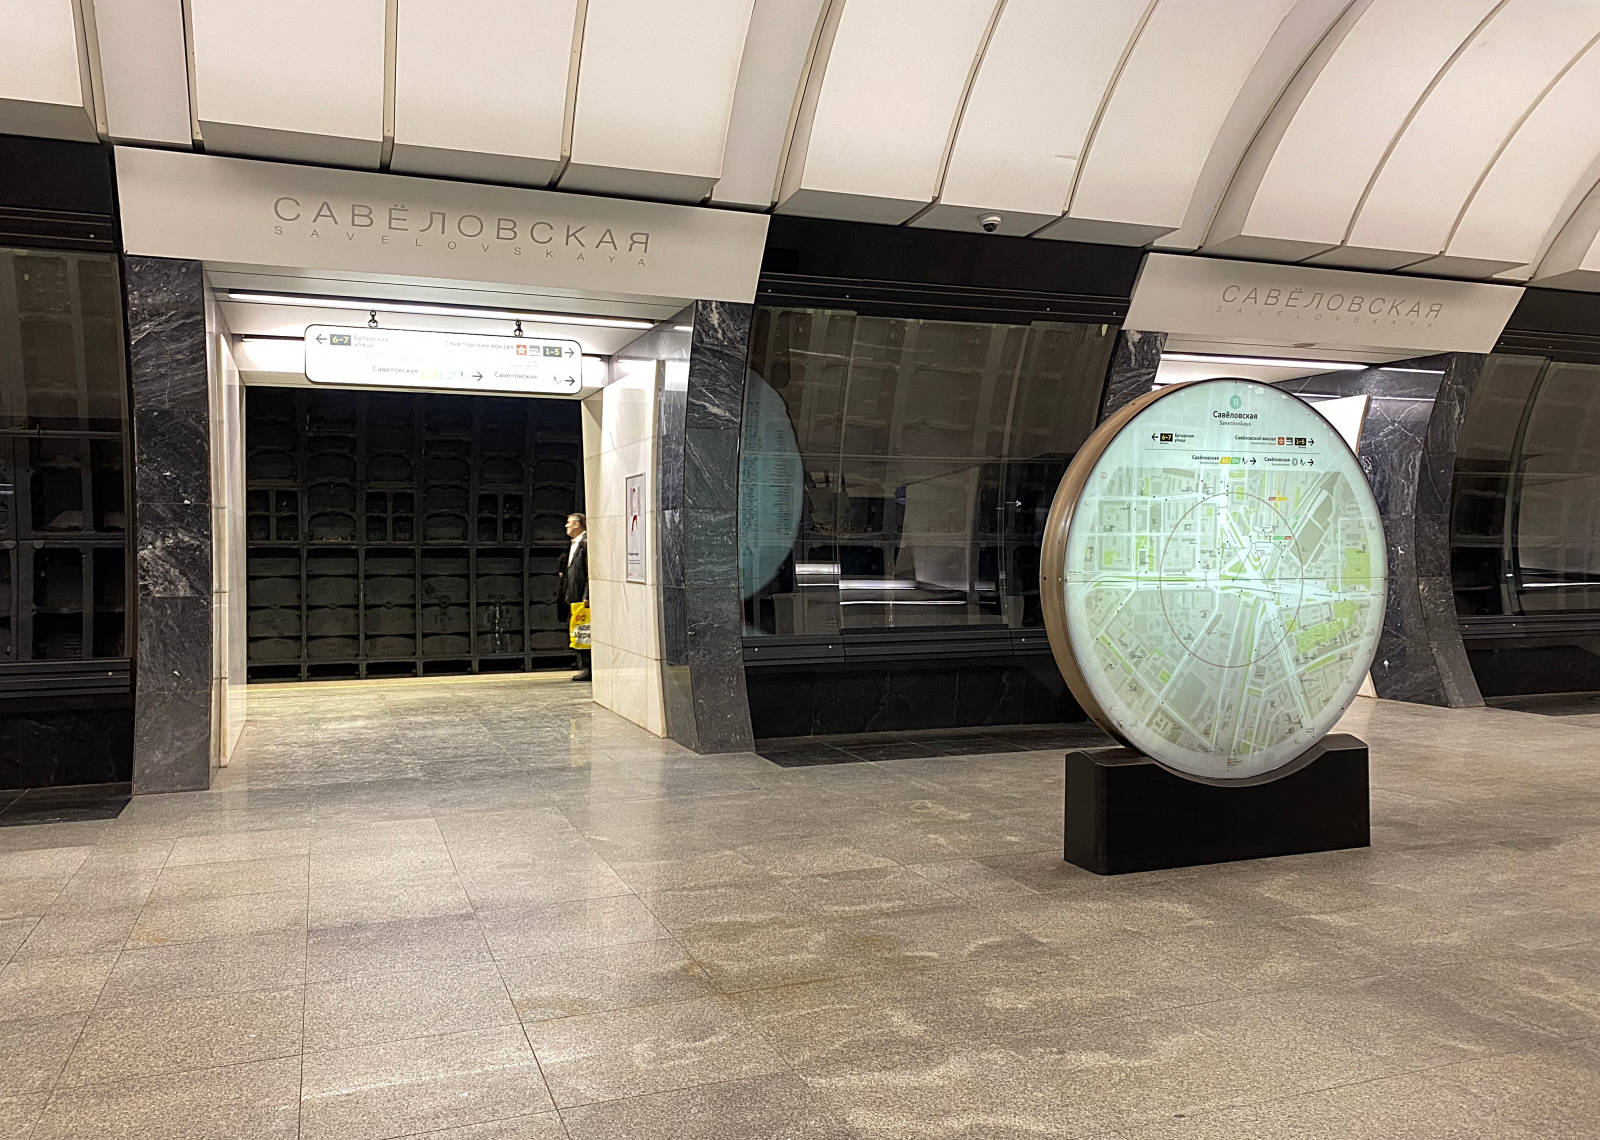 Навигационные указатели едином стиле установили в метро, МЦК и МЦД